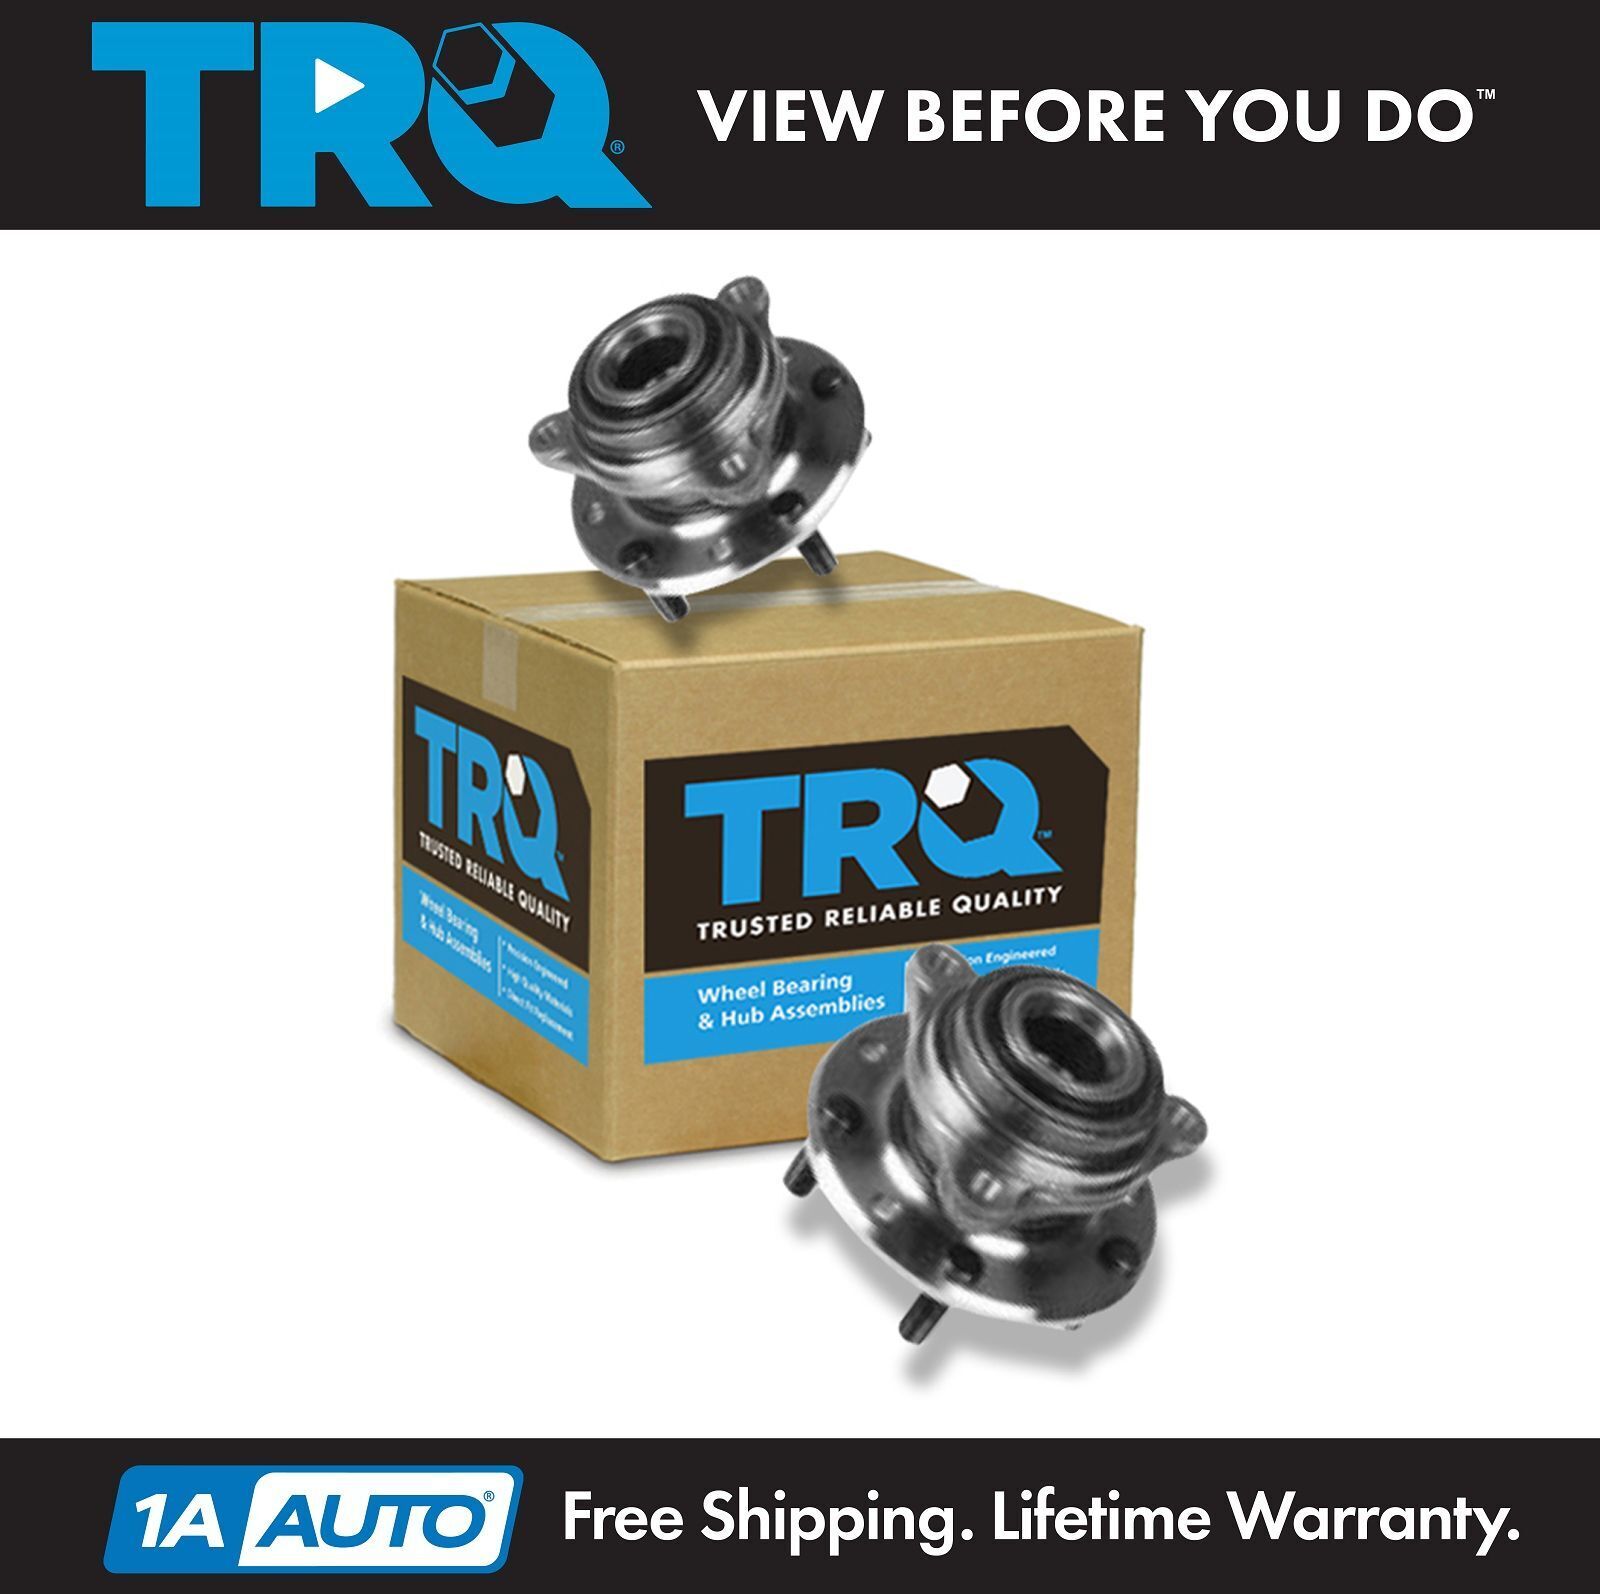 TRQ Wheel Hub & Bearing Pair for Blazer S10 Jimmy S15 Pickup Truck Seville